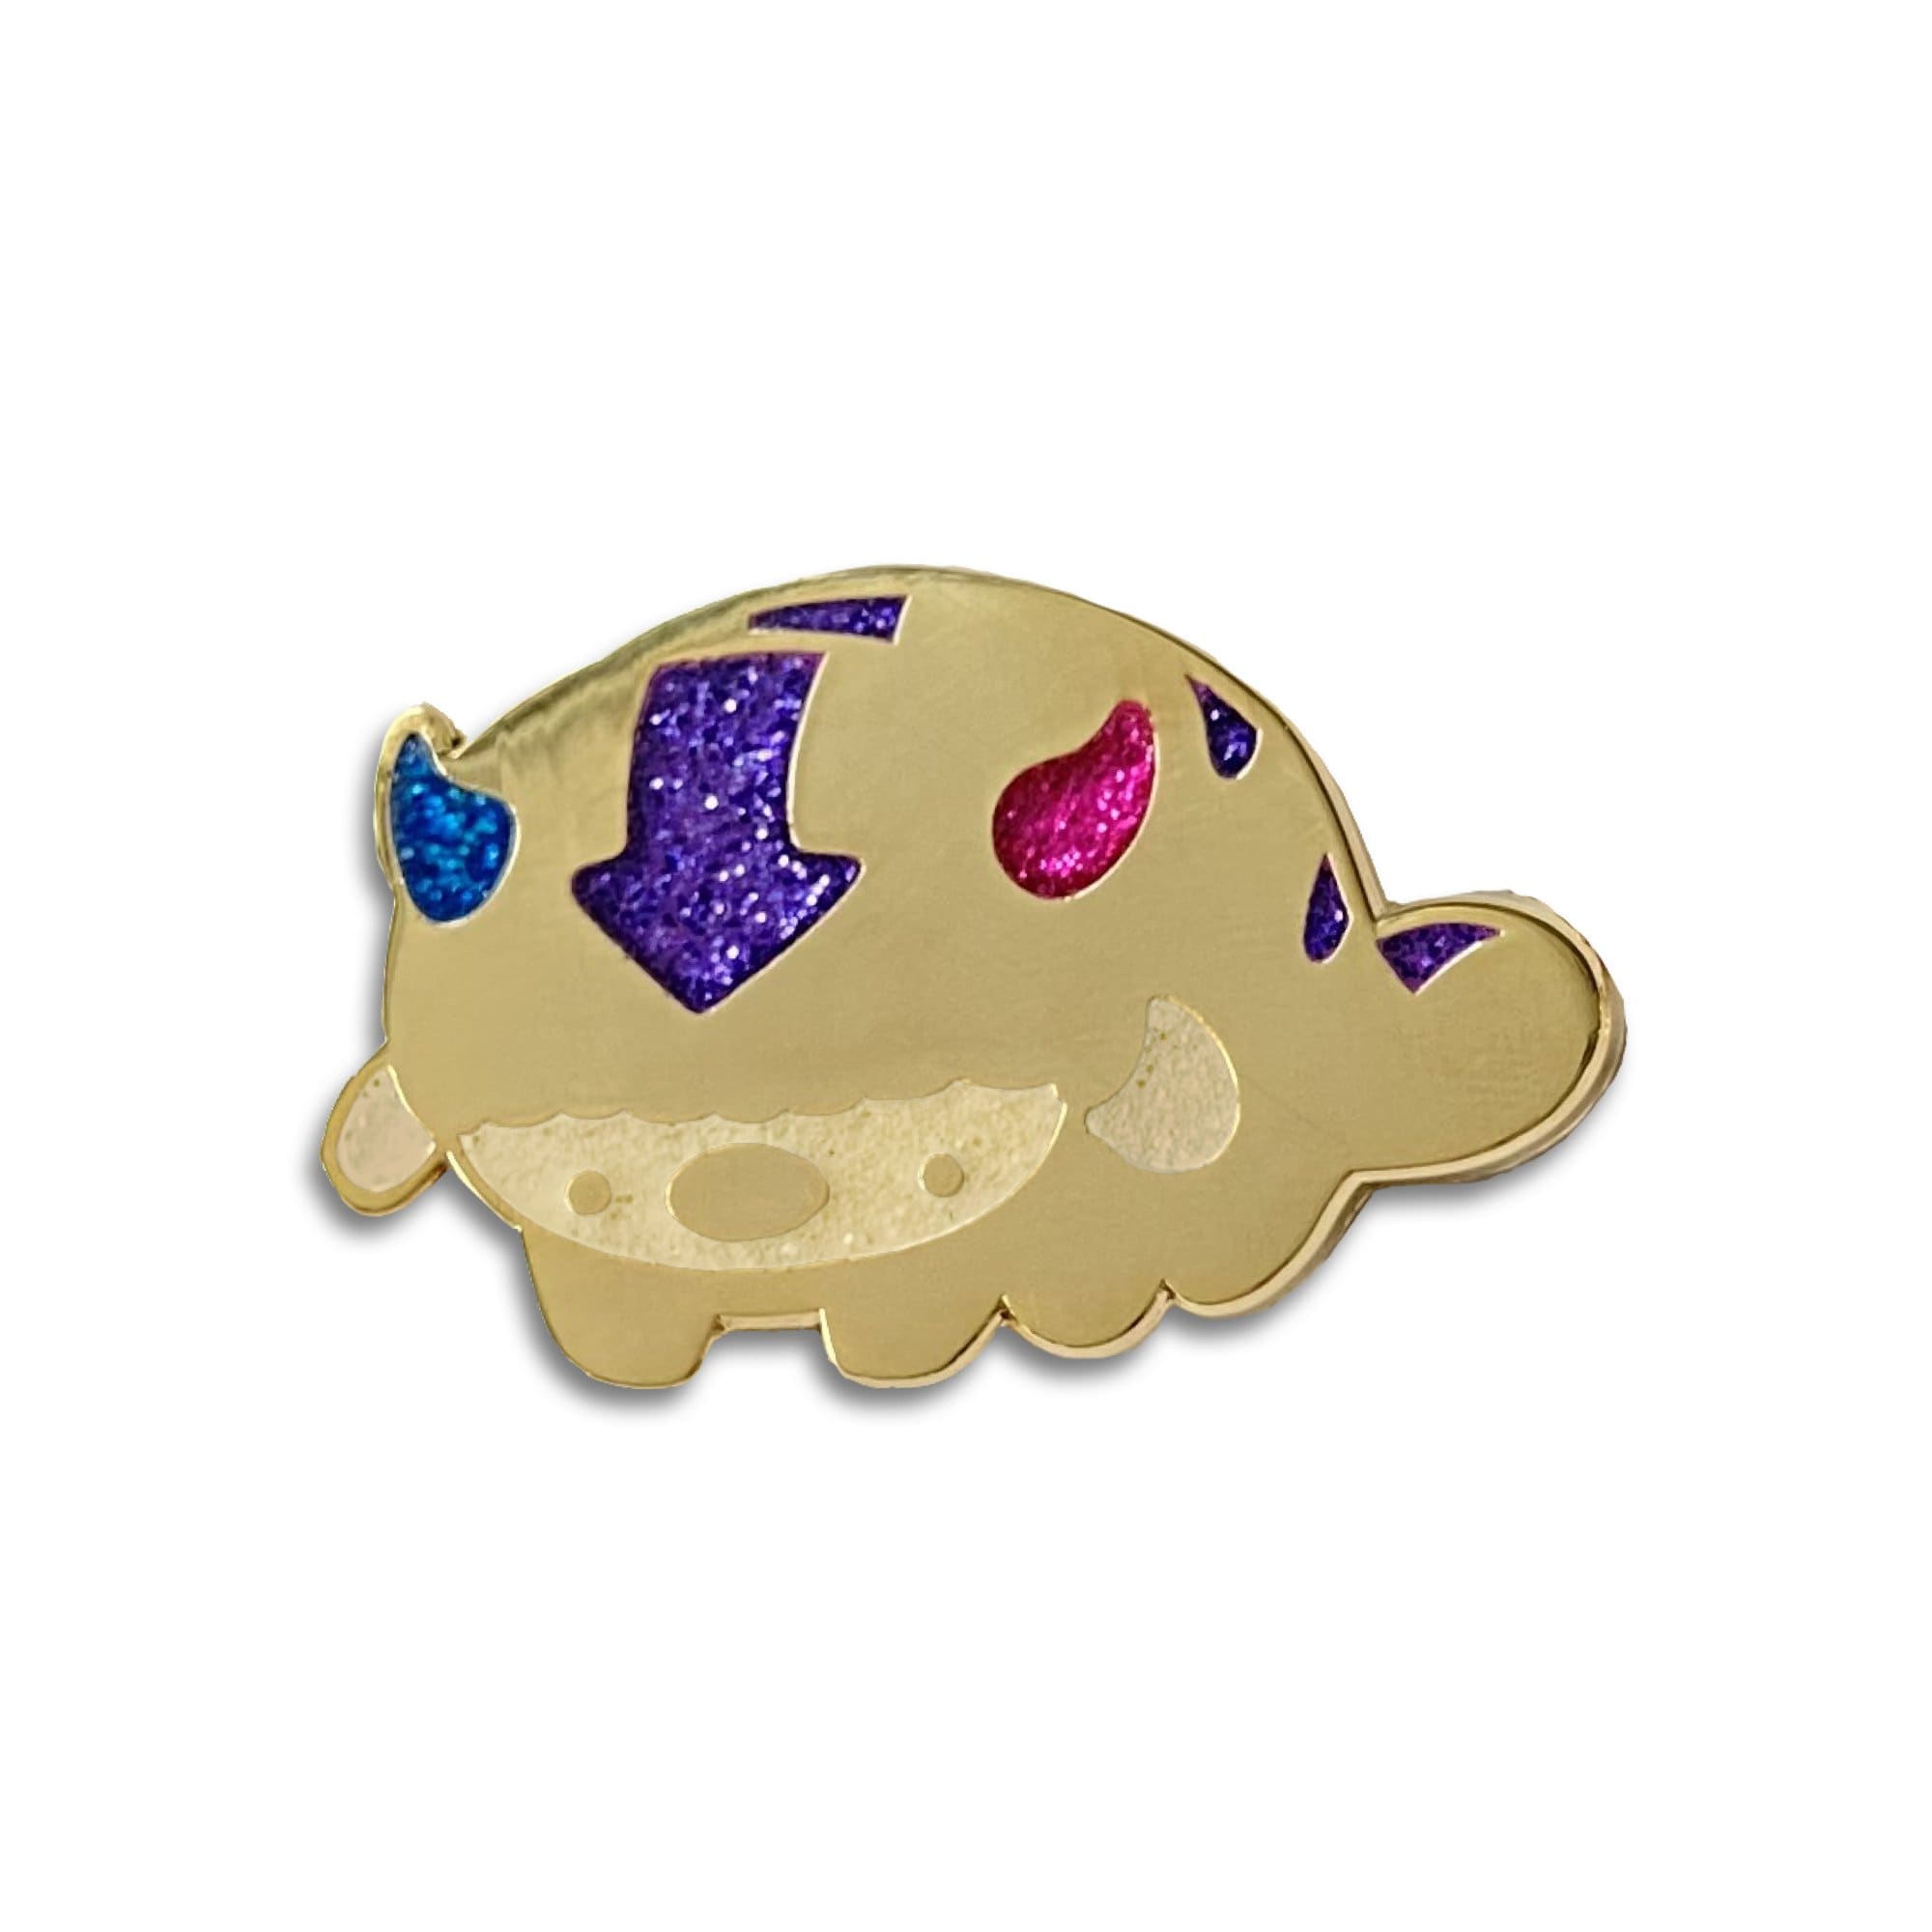 cuddlefish Bi-Son pin